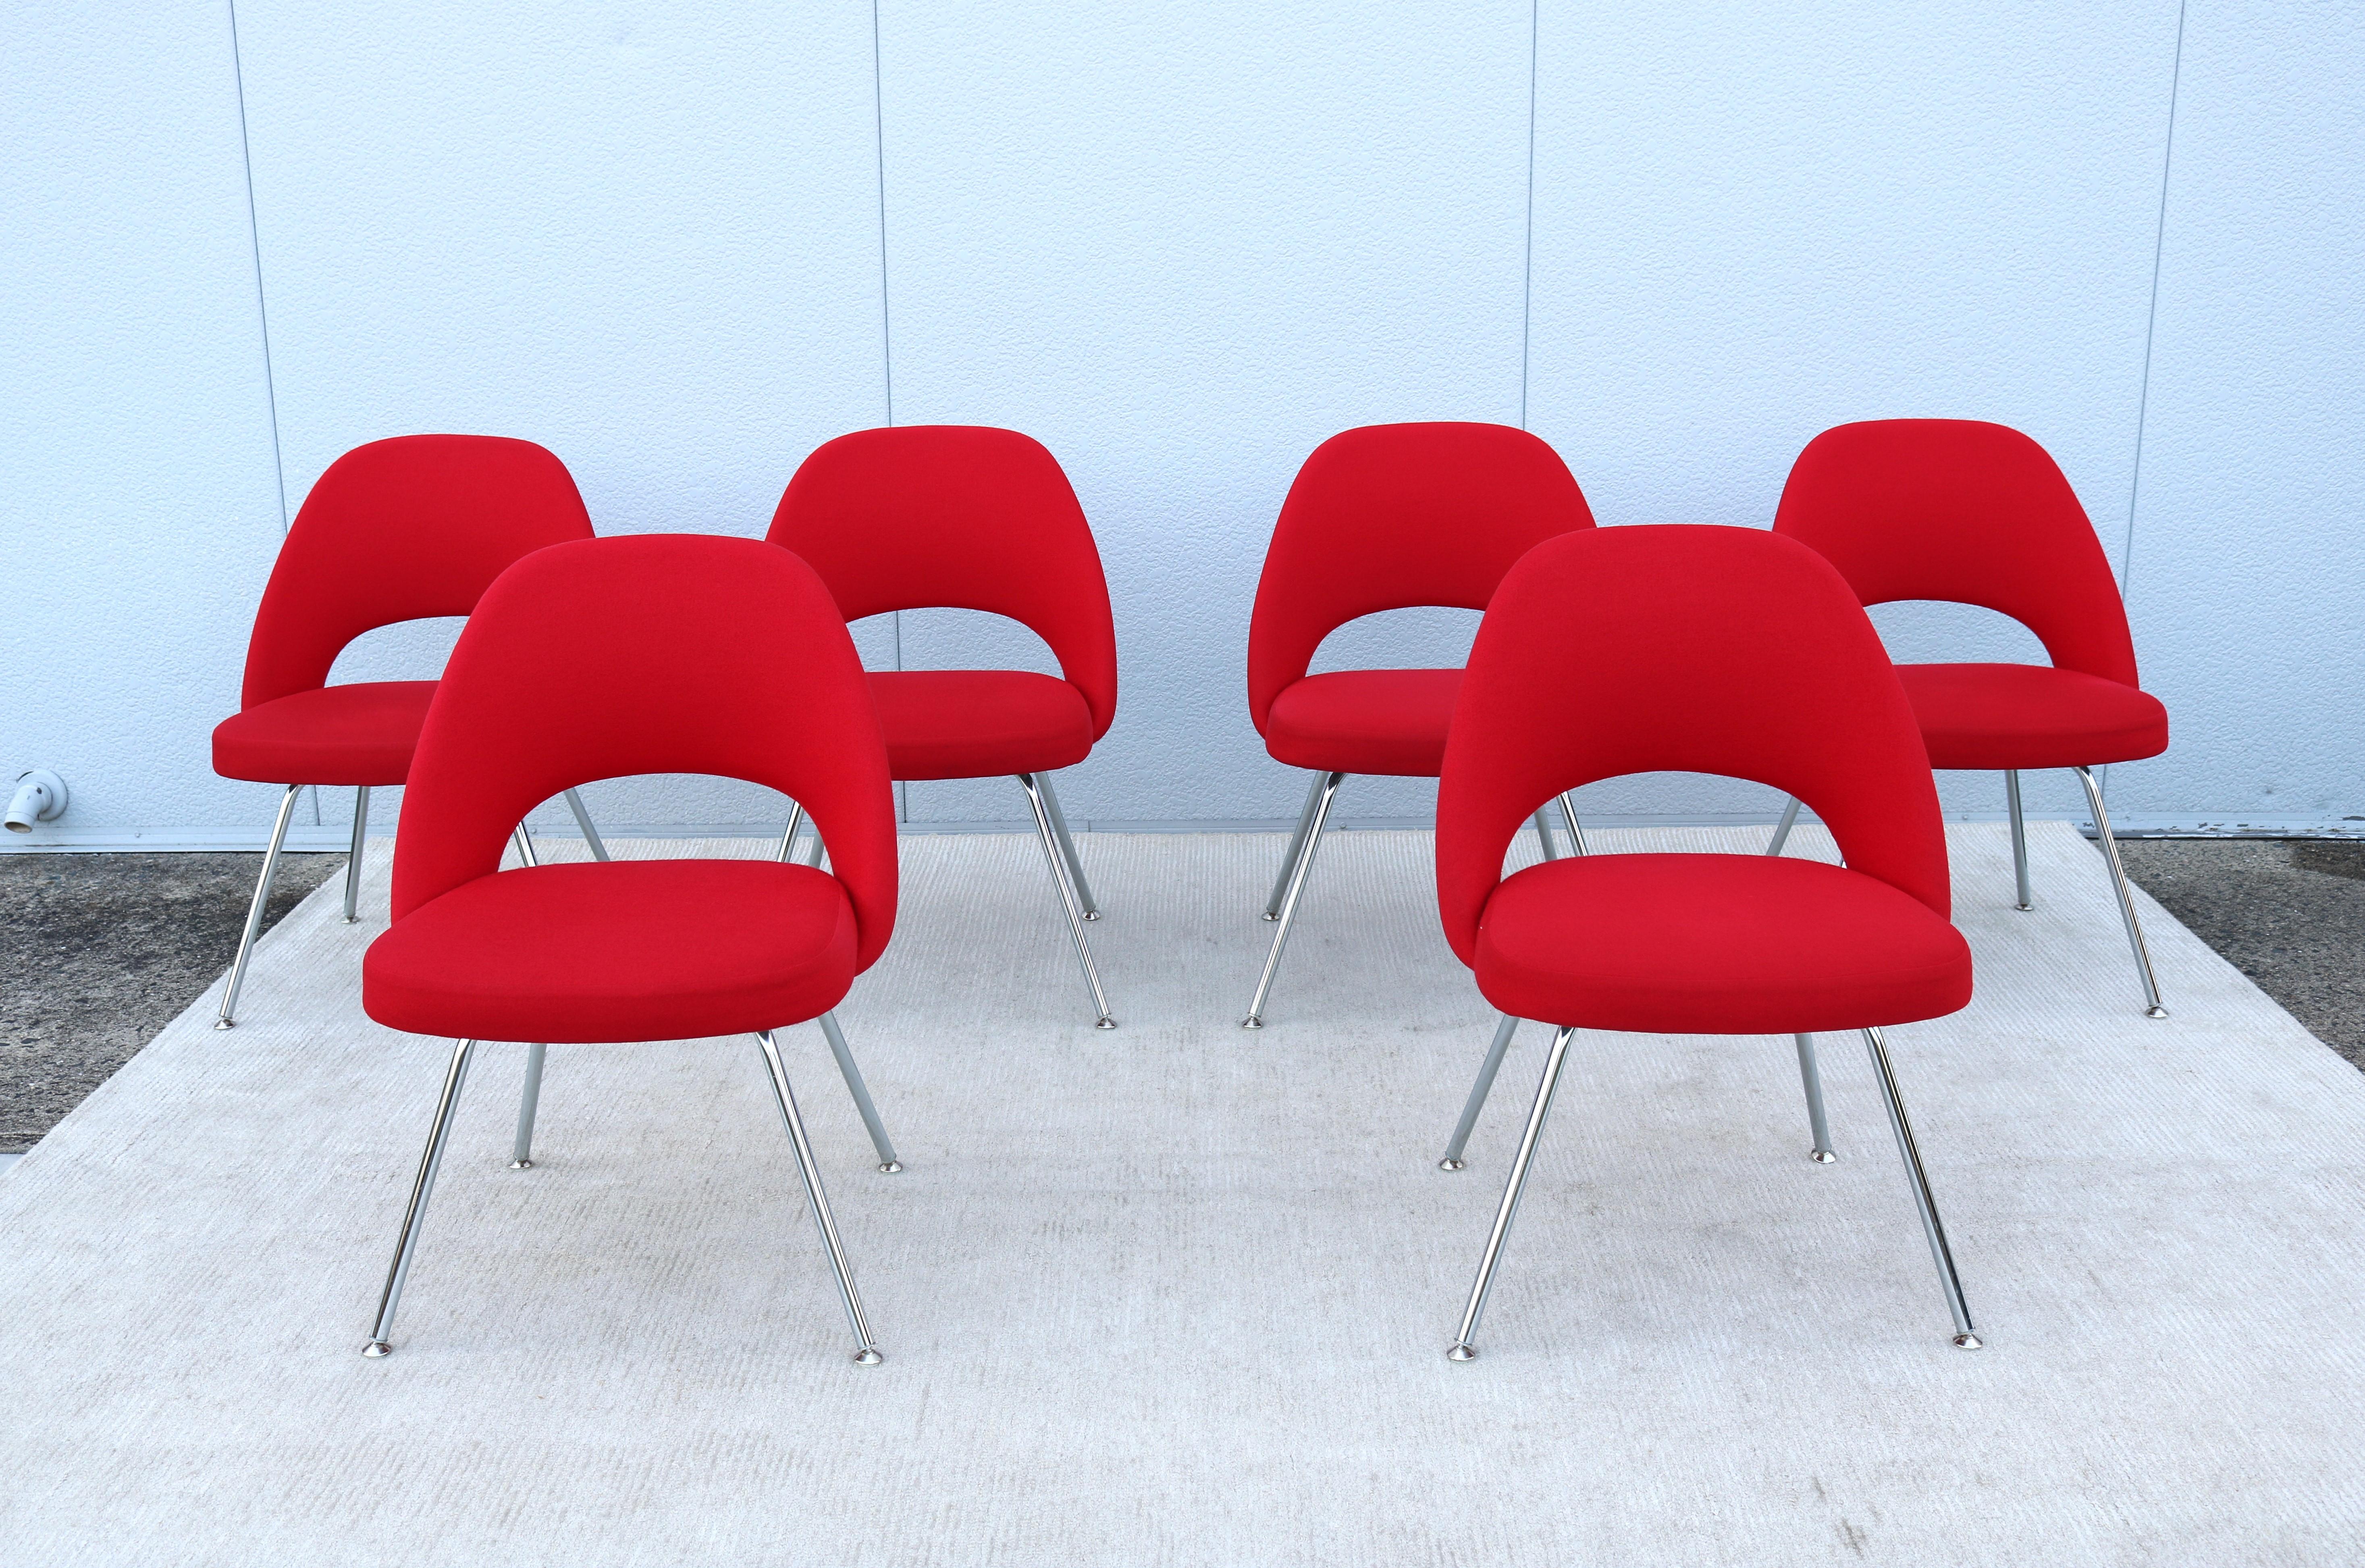 Atemberaubende authentische Mitte des Jahrhunderts modernen Satz von sechs Saarinen Executive armless Stühle von Knoll.
Einer der beliebtesten Entwürfe von Knoll, der durch die Form seiner Schale höchsten Komfort bietet.
Er wurde 1950 eingeführt und